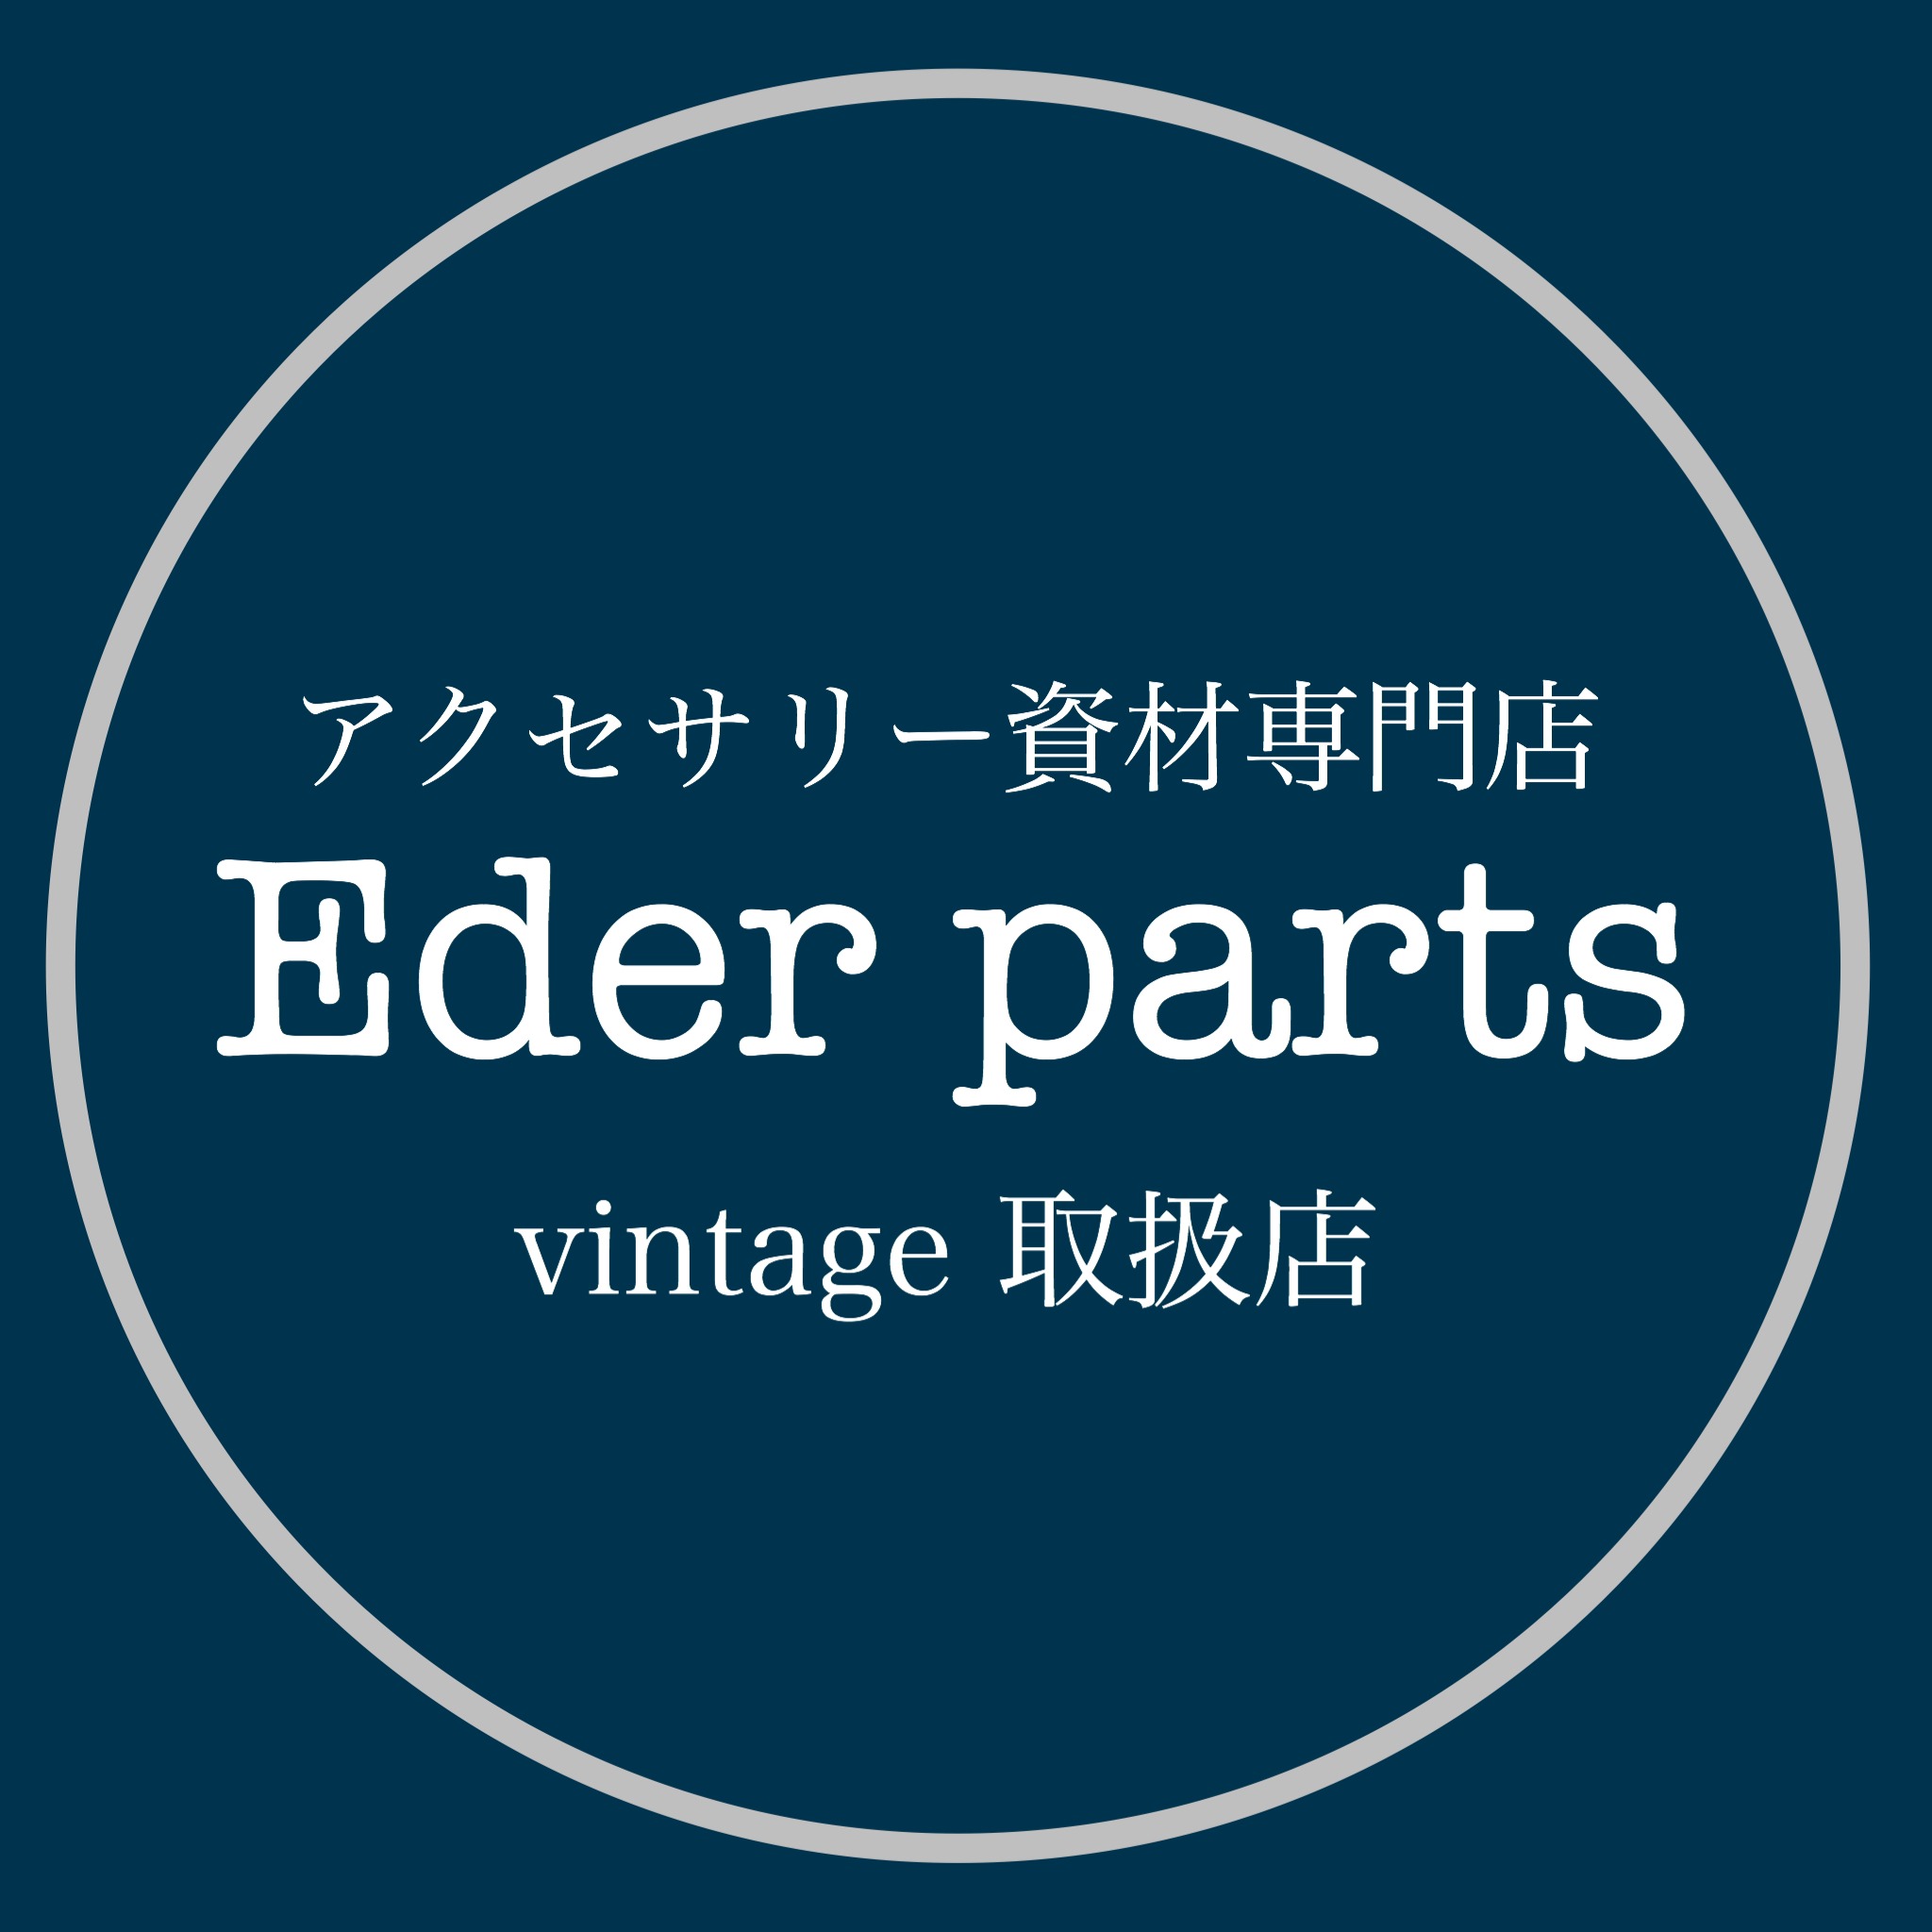 Eder parts